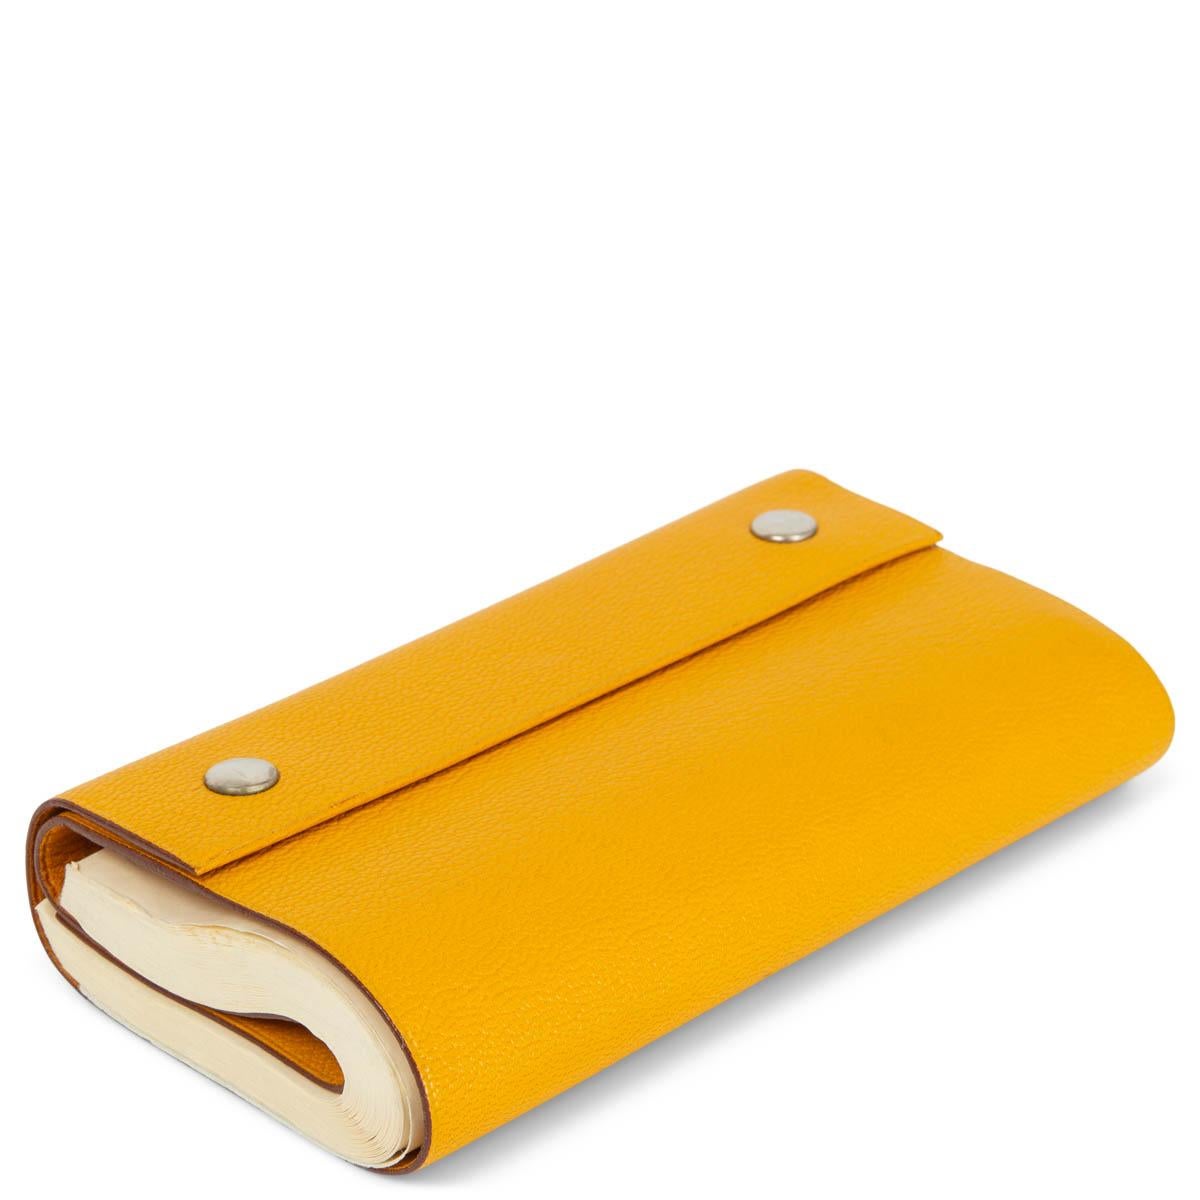 100% authentisches Hermès Cahier Roule Roll Notebook in Jaune (gelb) Chèvre Mysore Leder. Zeigt einige Stiftspuren auf der Rückseite. Insgesamt in gutem Zustand. Wird mit Staubbeutel geliefert. 

Messungen
Breite	13cm (5.1in)
Höhe	8cm